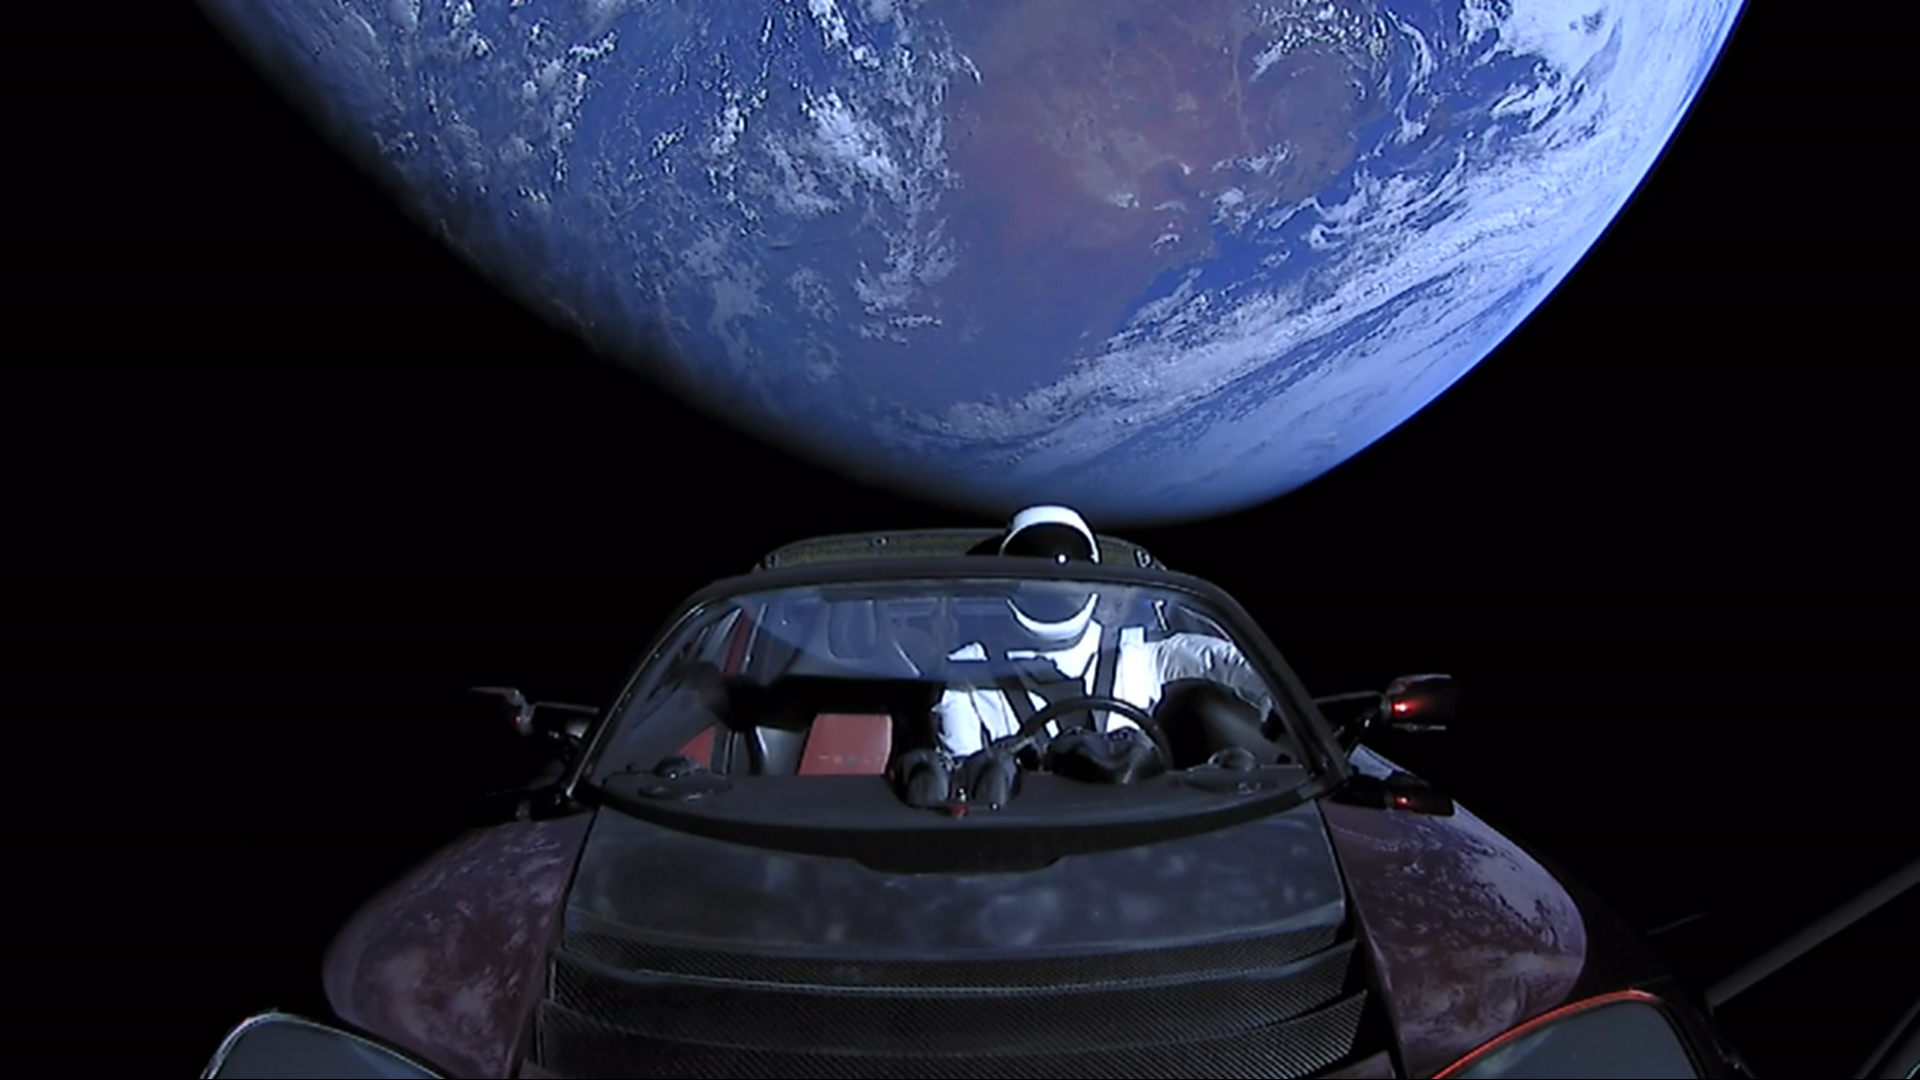 Onde está exatamente o Tesla Roadster lançado no espaço por Elon Musk